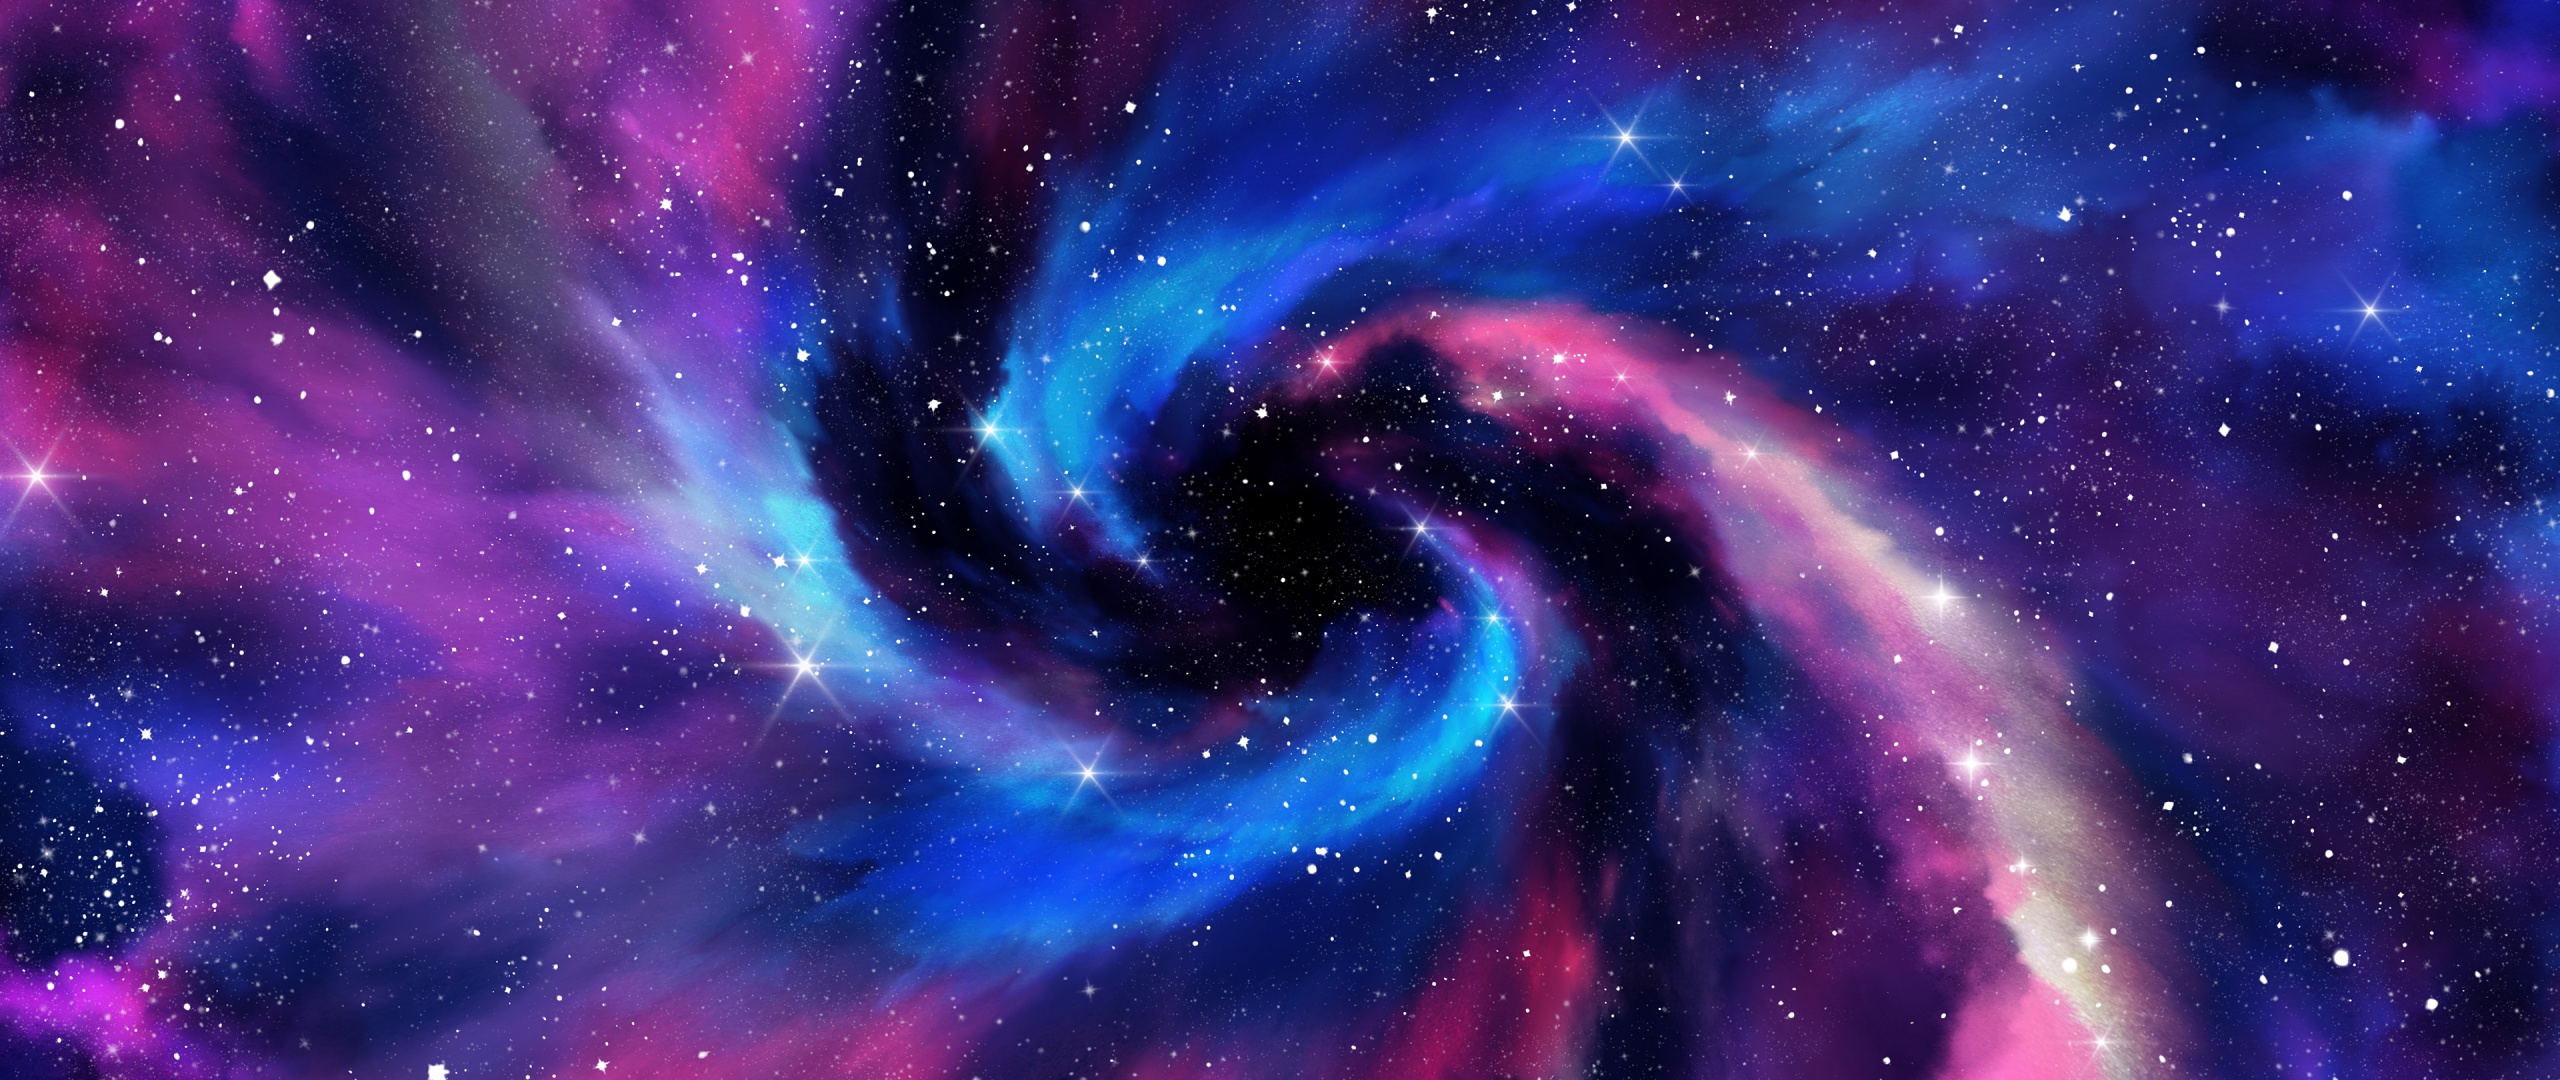 46+] 4K Milky Way Wallpaper - WallpaperSafari